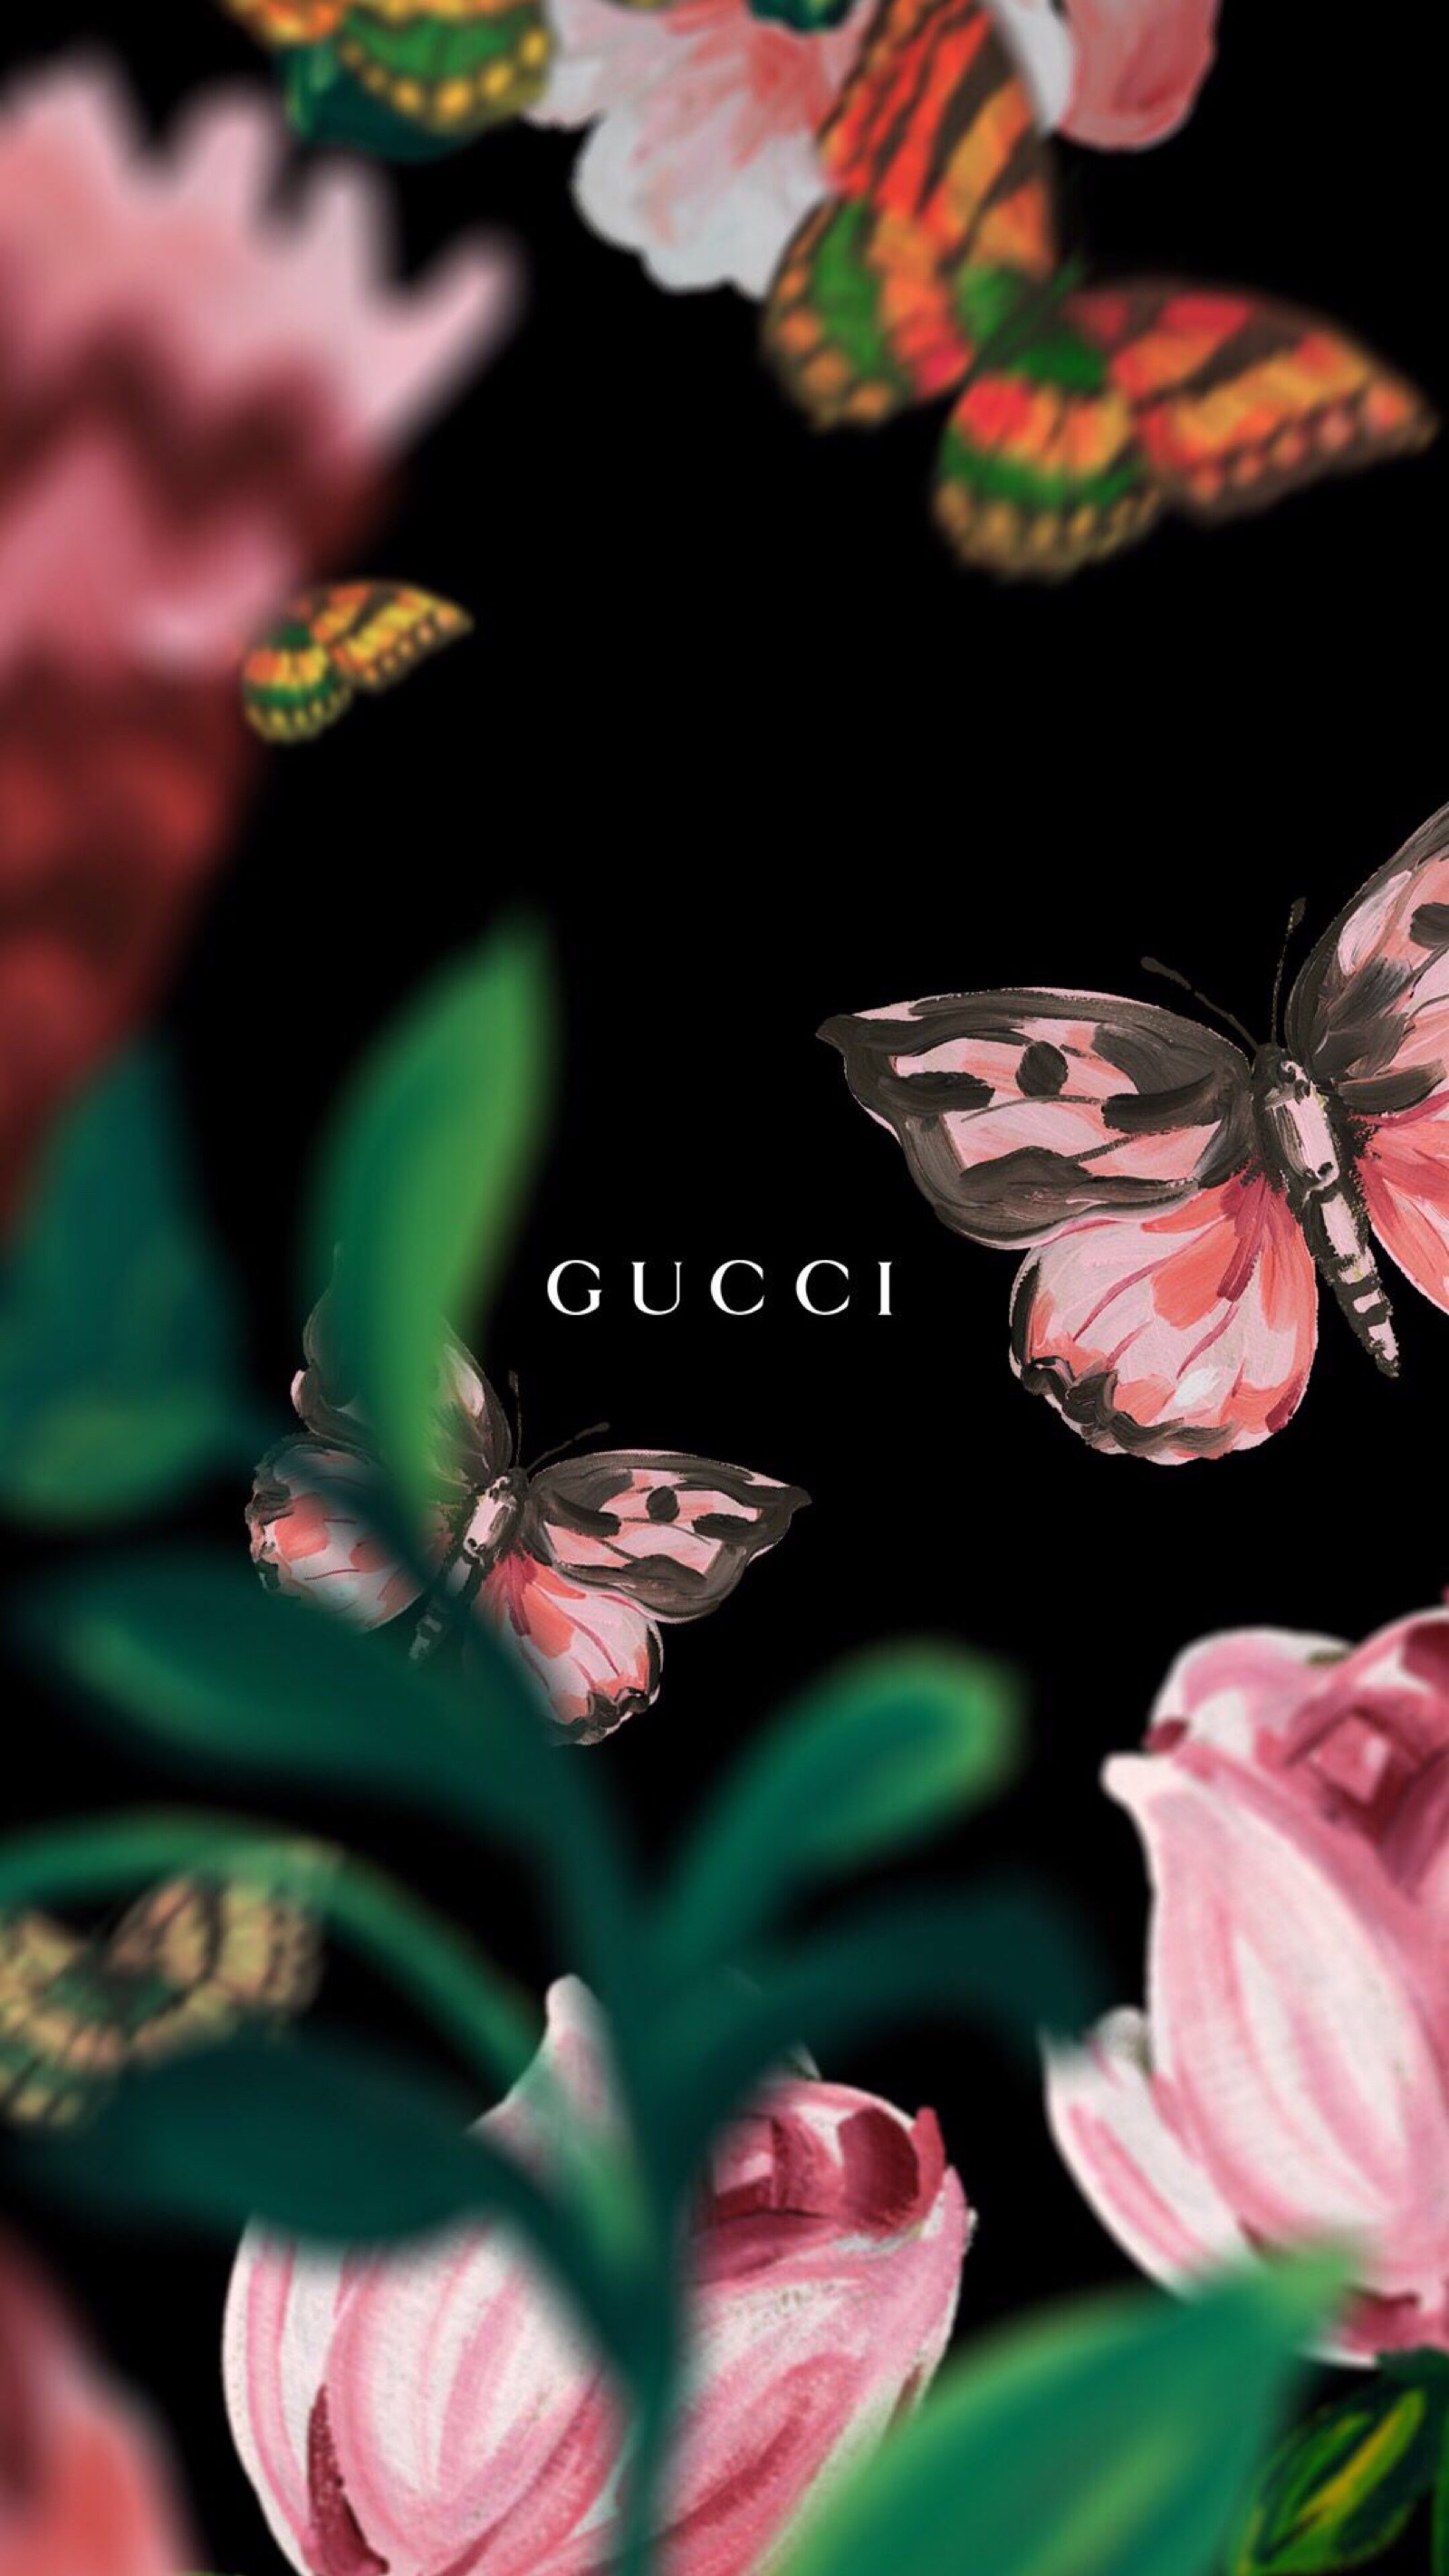 Gucci花系列手机壁纸背景图 堆糖 美图壁纸兴趣社区